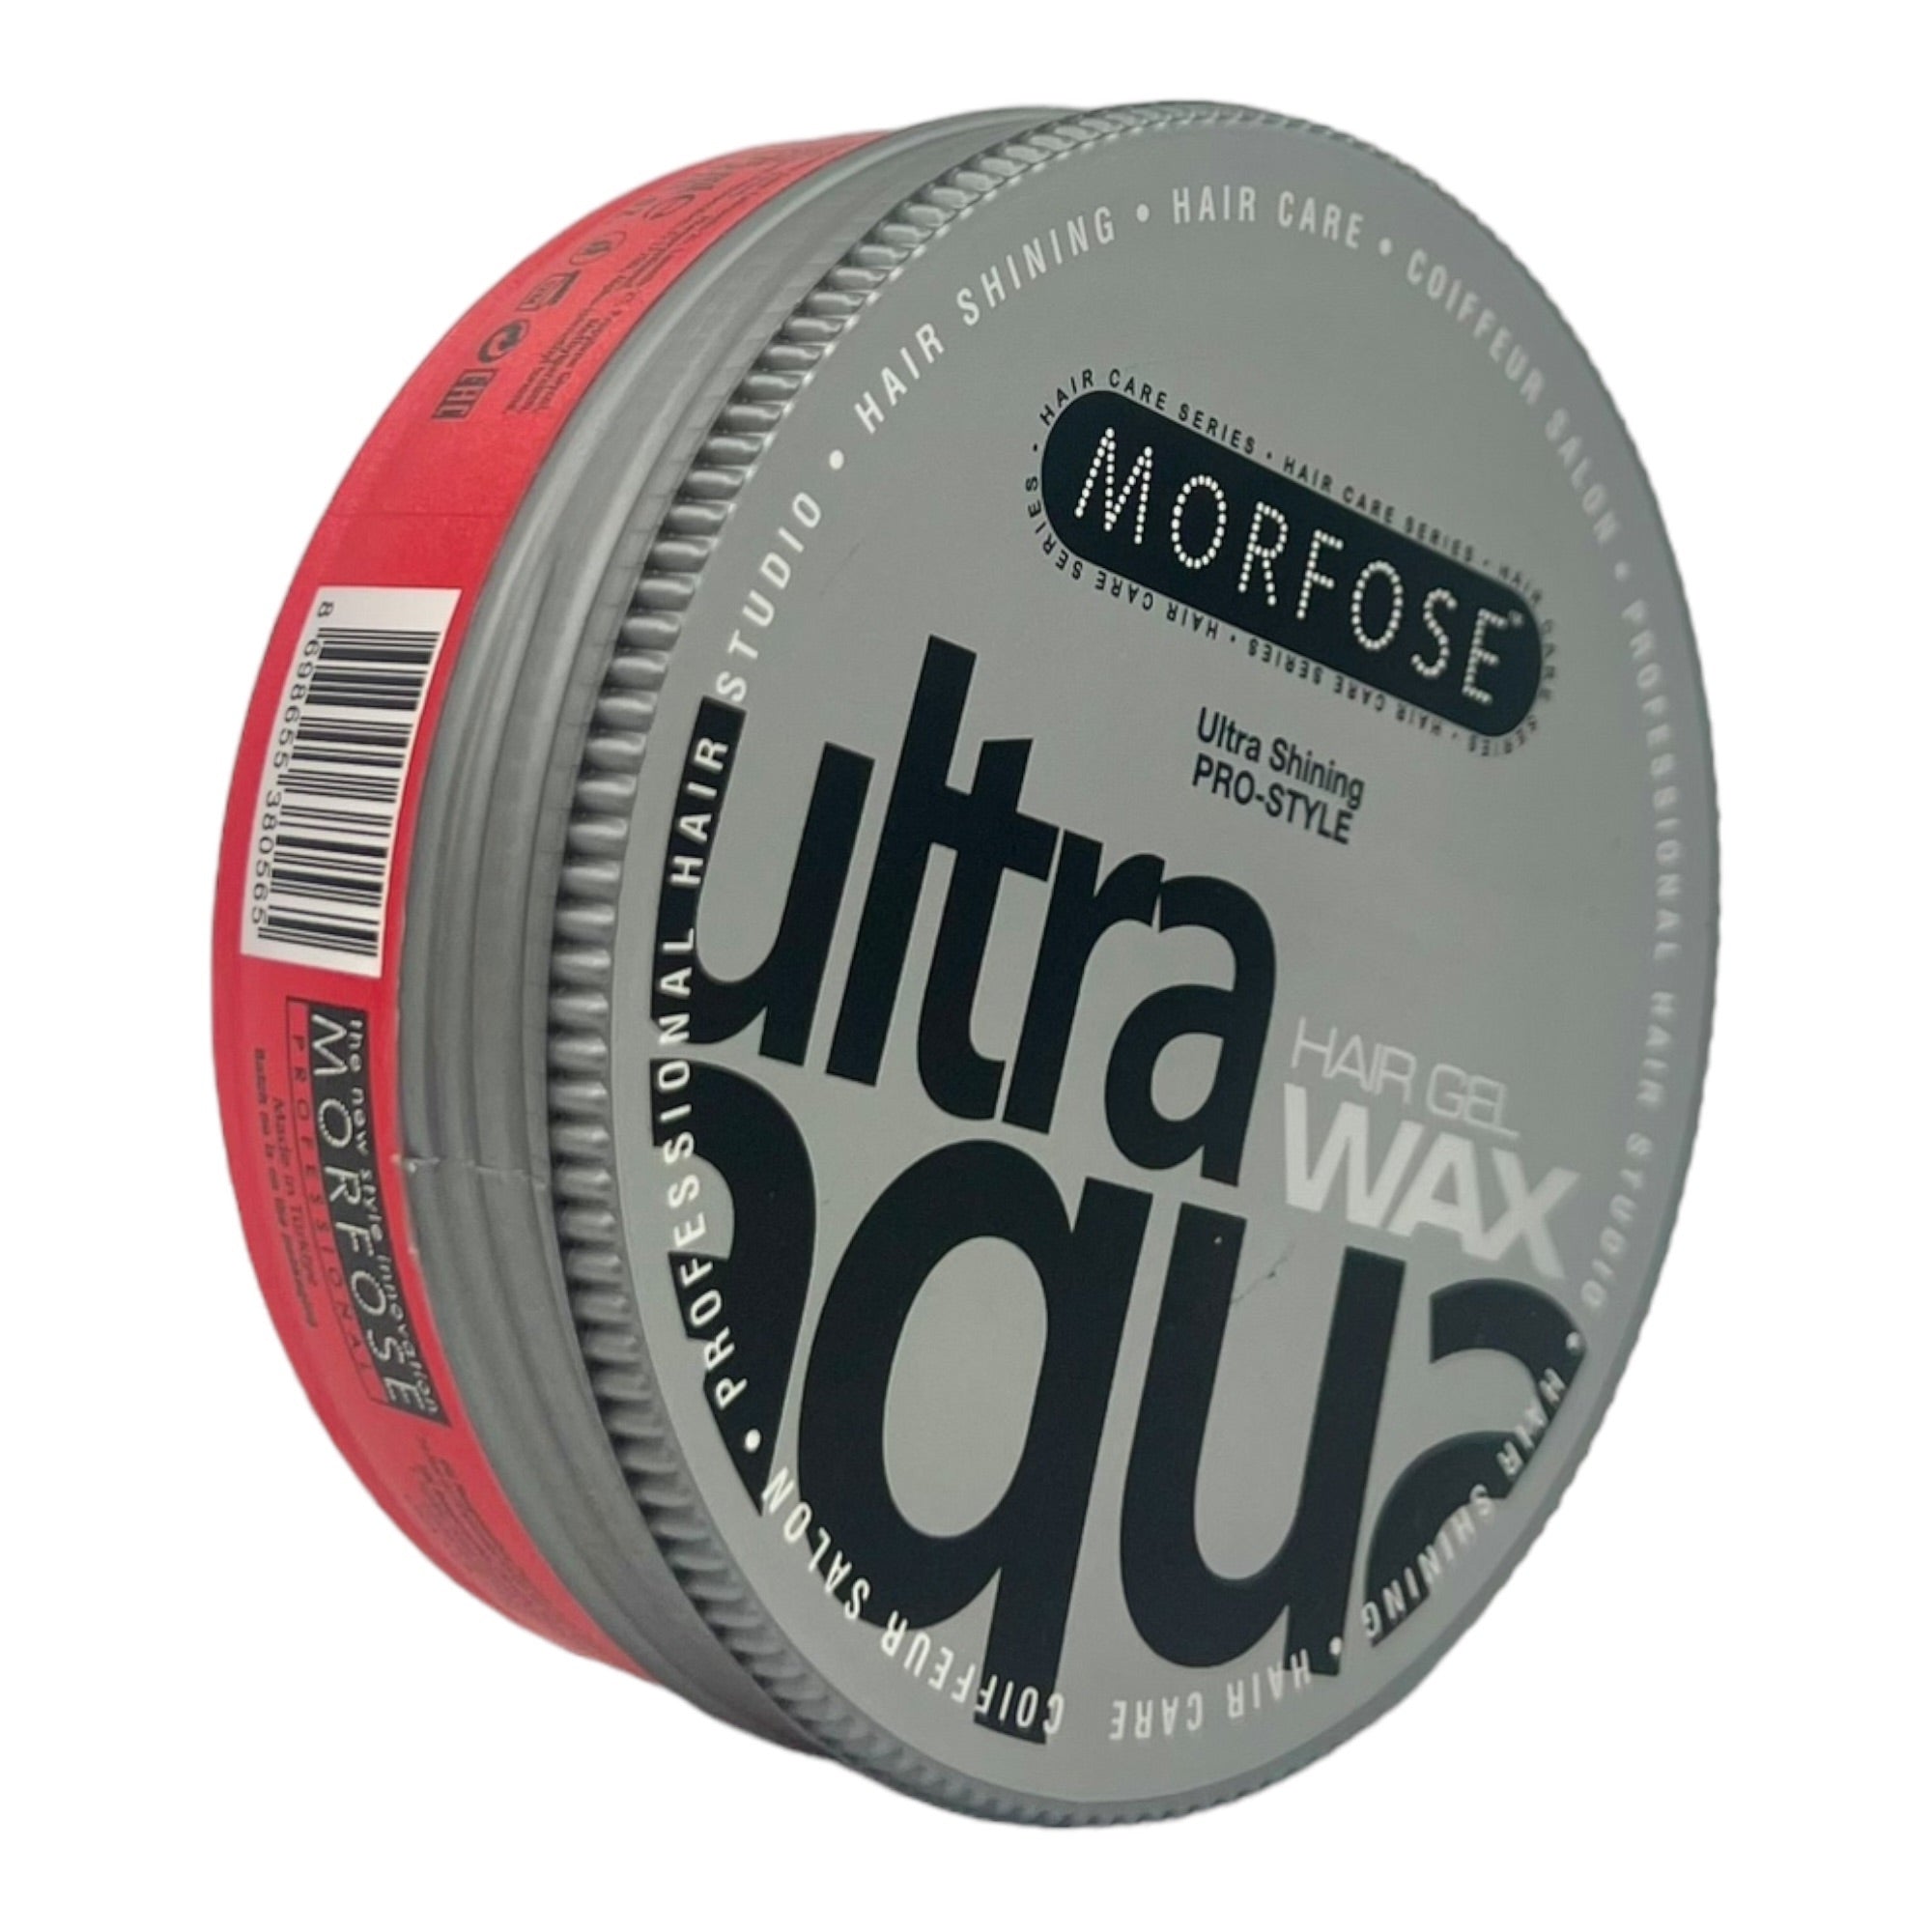 Morfose - Ultra Aqua Hair Gel Wax 175ml